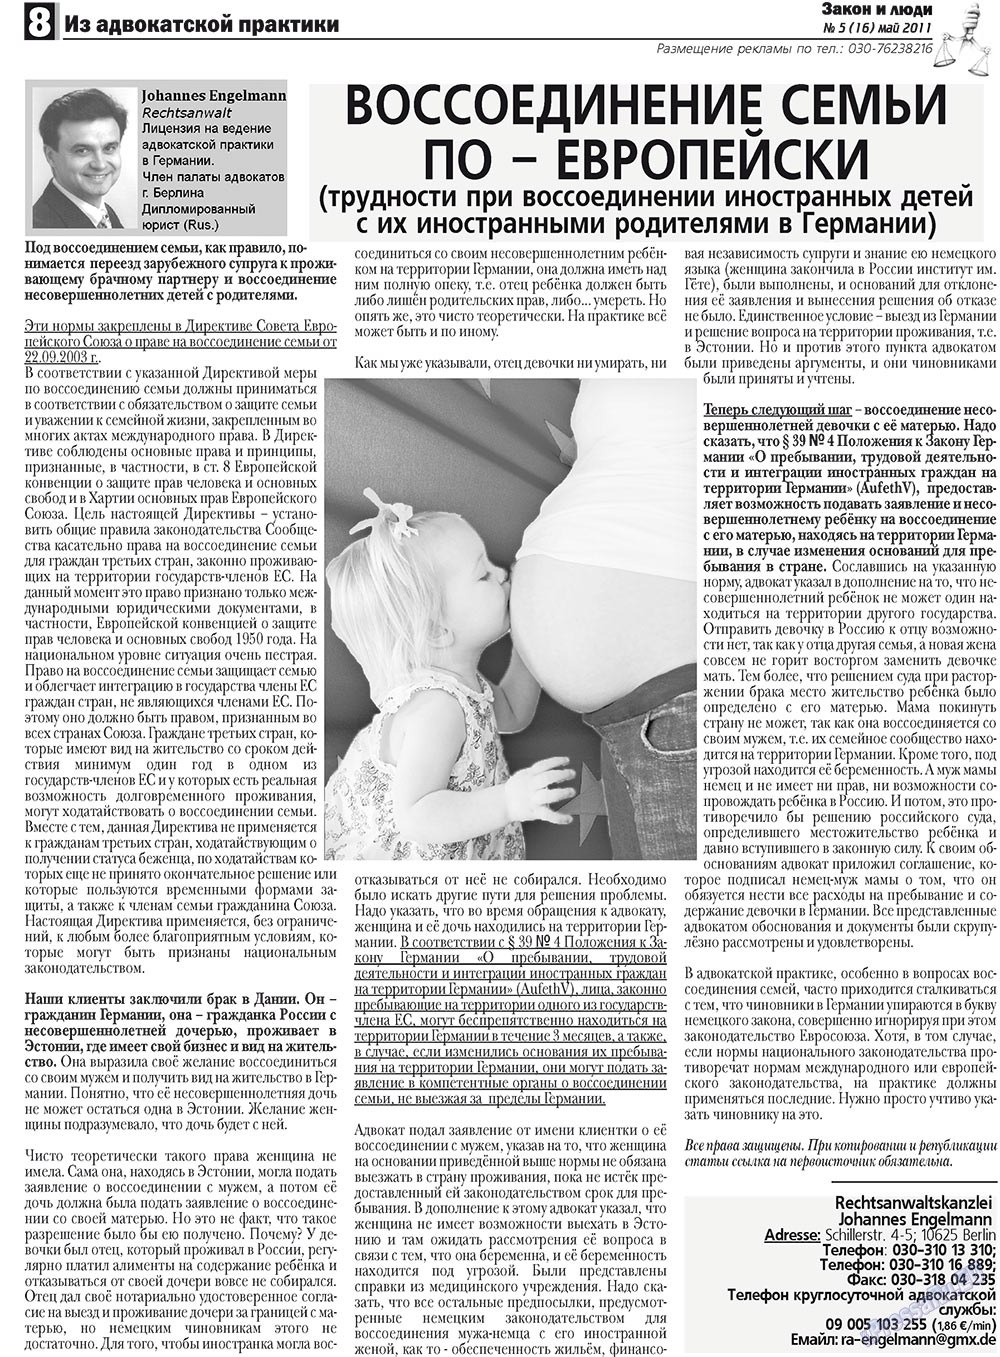 Закон и люди, газета. 2011 №5 стр.8